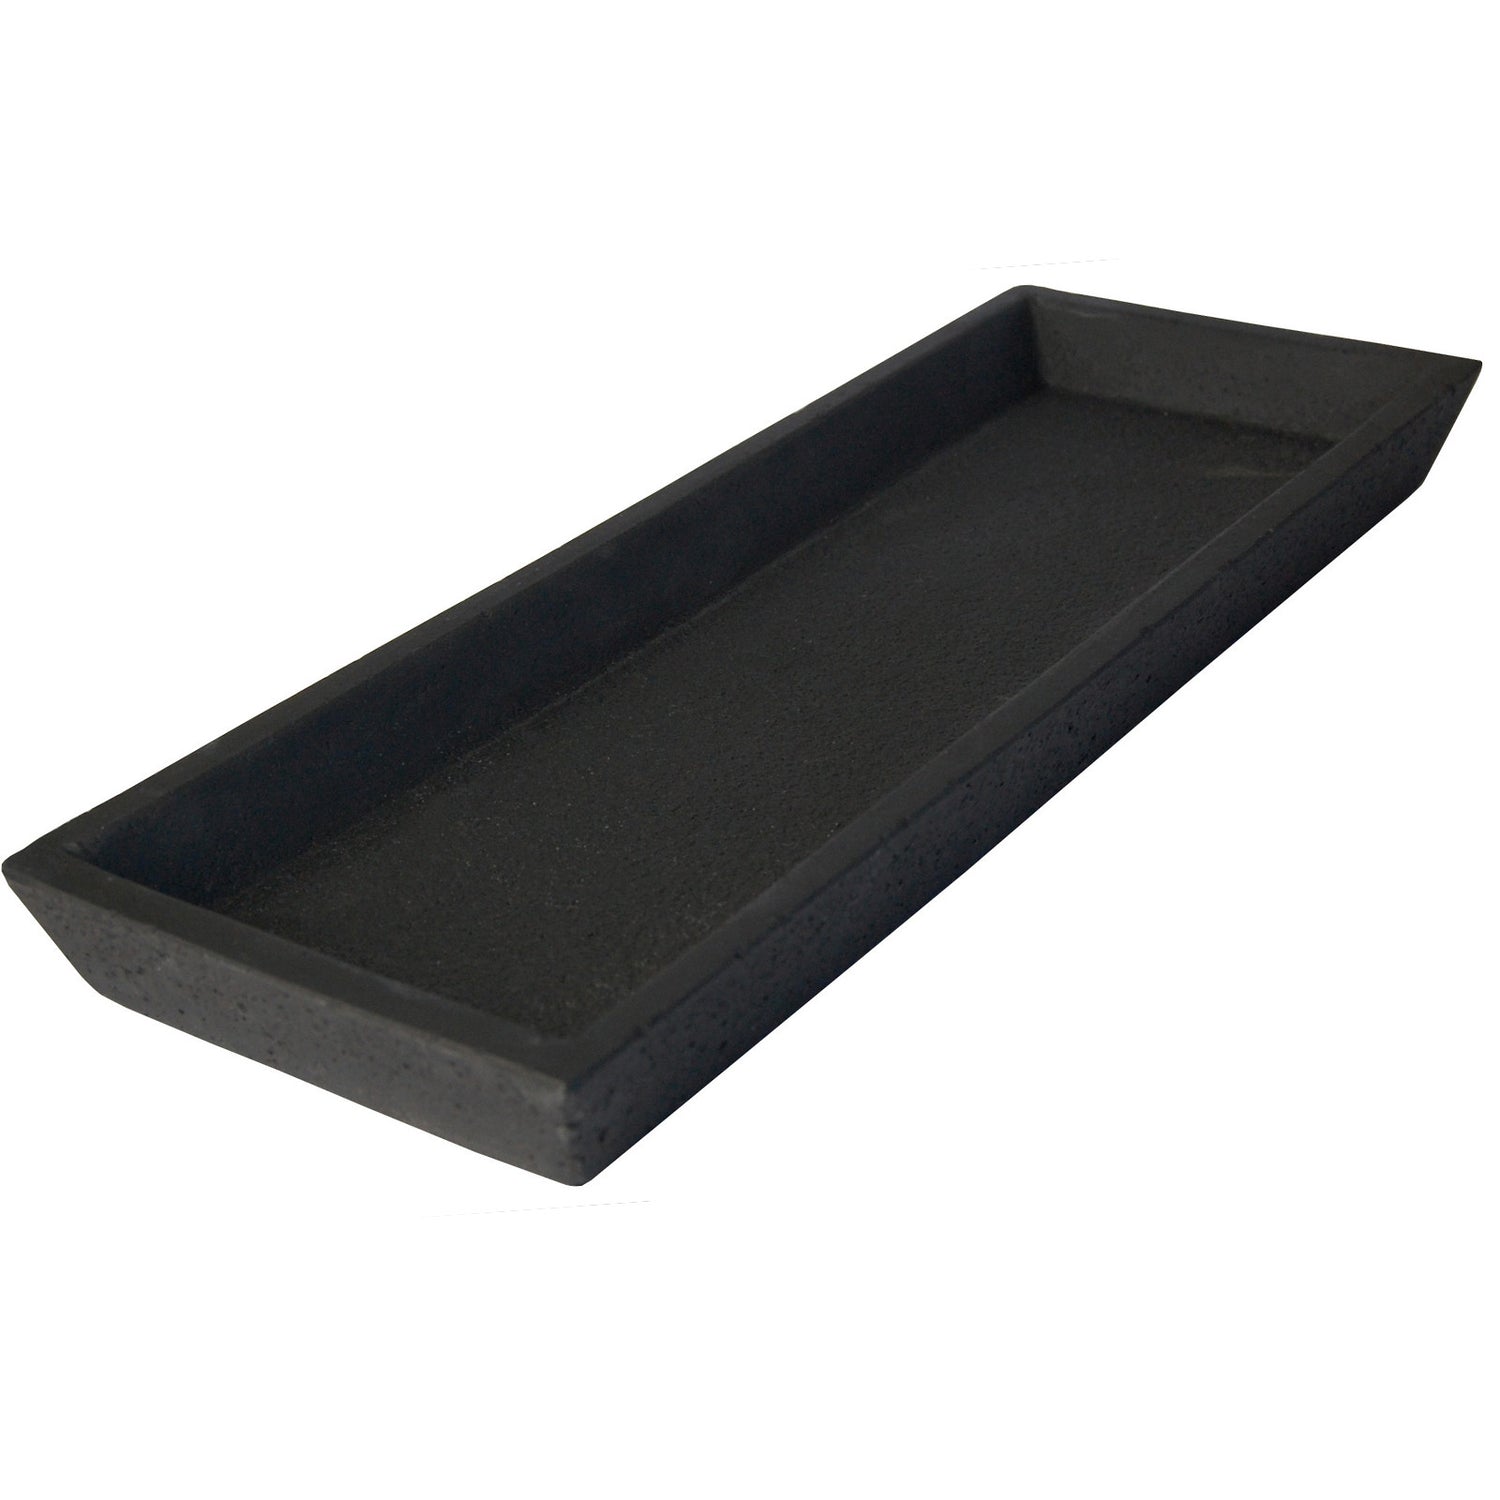 Concrete Square Tray- Black